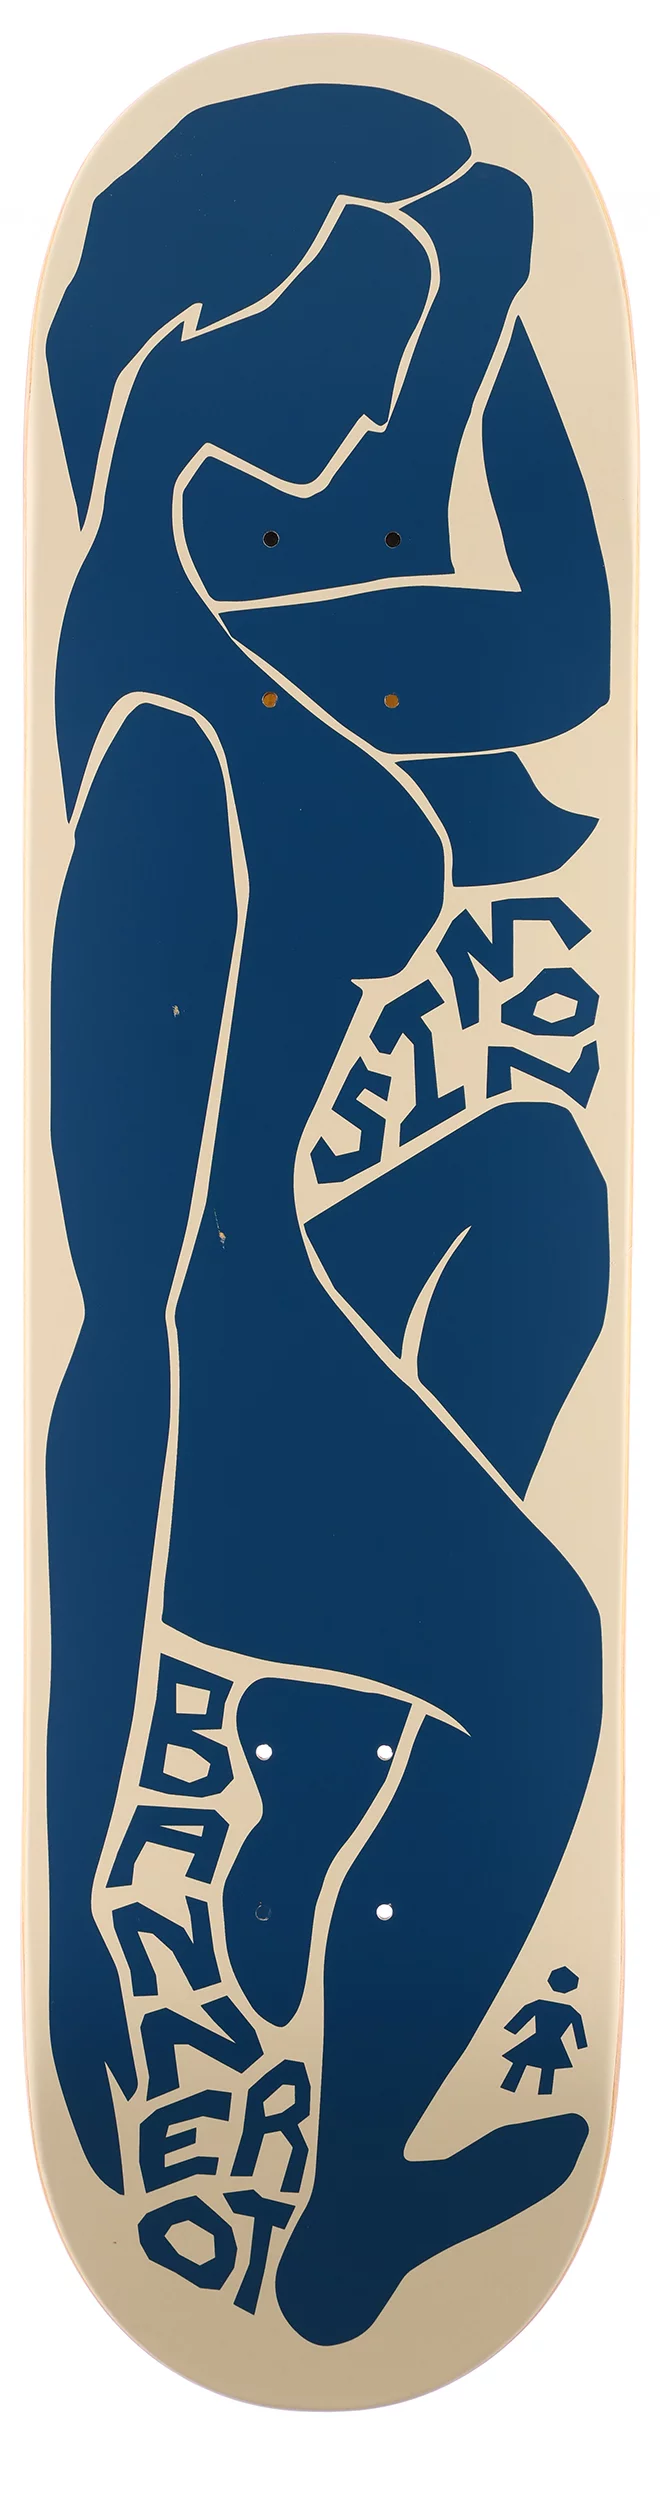 https://www.tactics.com/a/e2c7/1b/girl-bannerot-contour-curves-825-skateboard-deck.webp